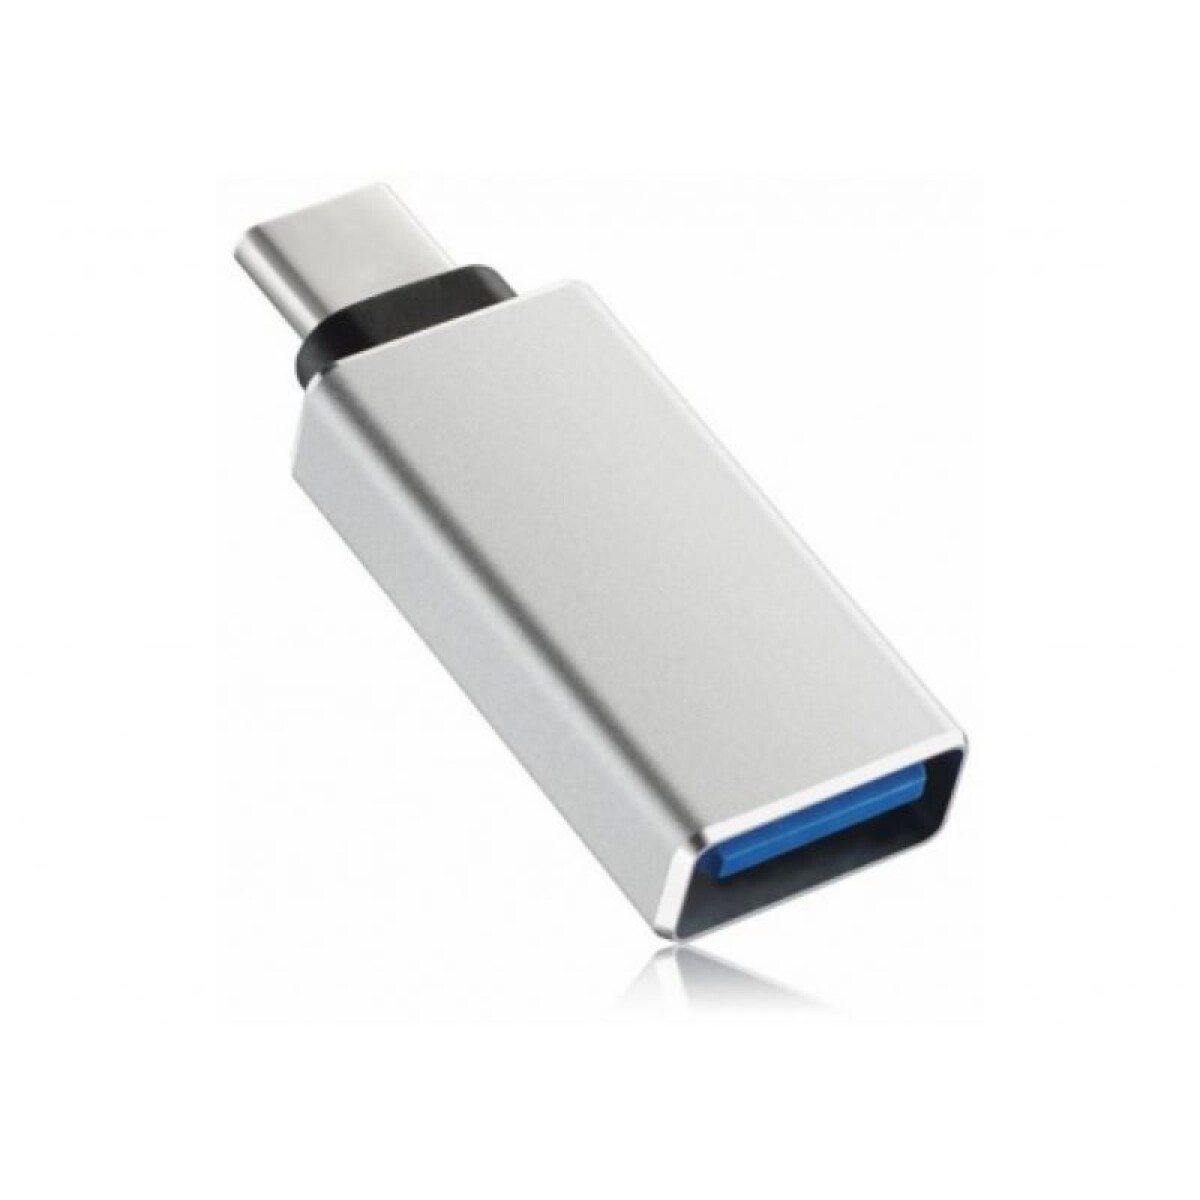 Adaptador OTG USB-C Macho a USB 3.0 Hembra 